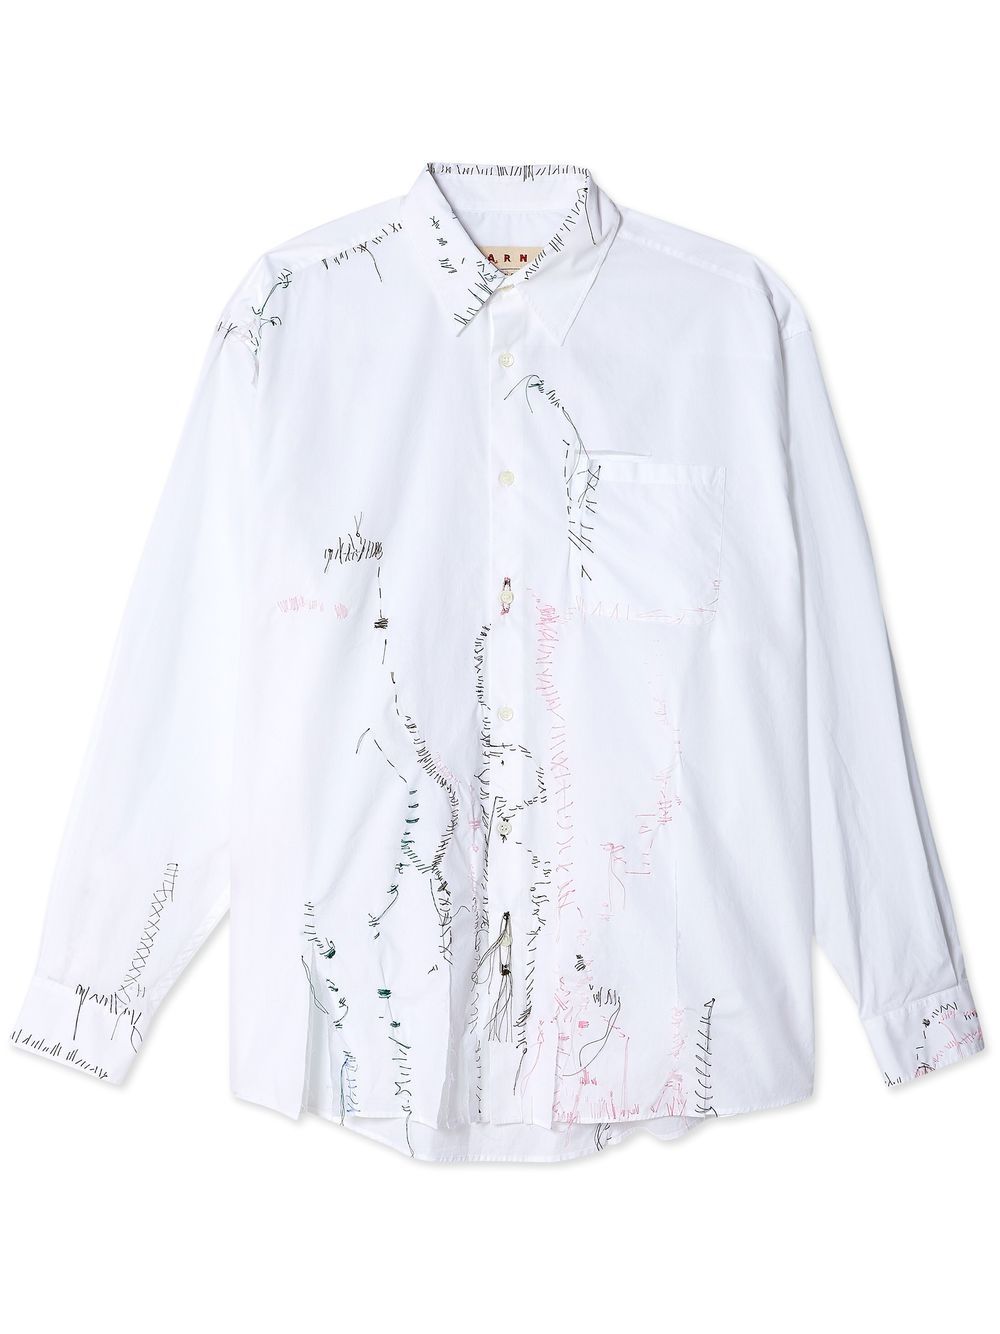 Marni distressed-stitching button-up Shirt - Farfetch